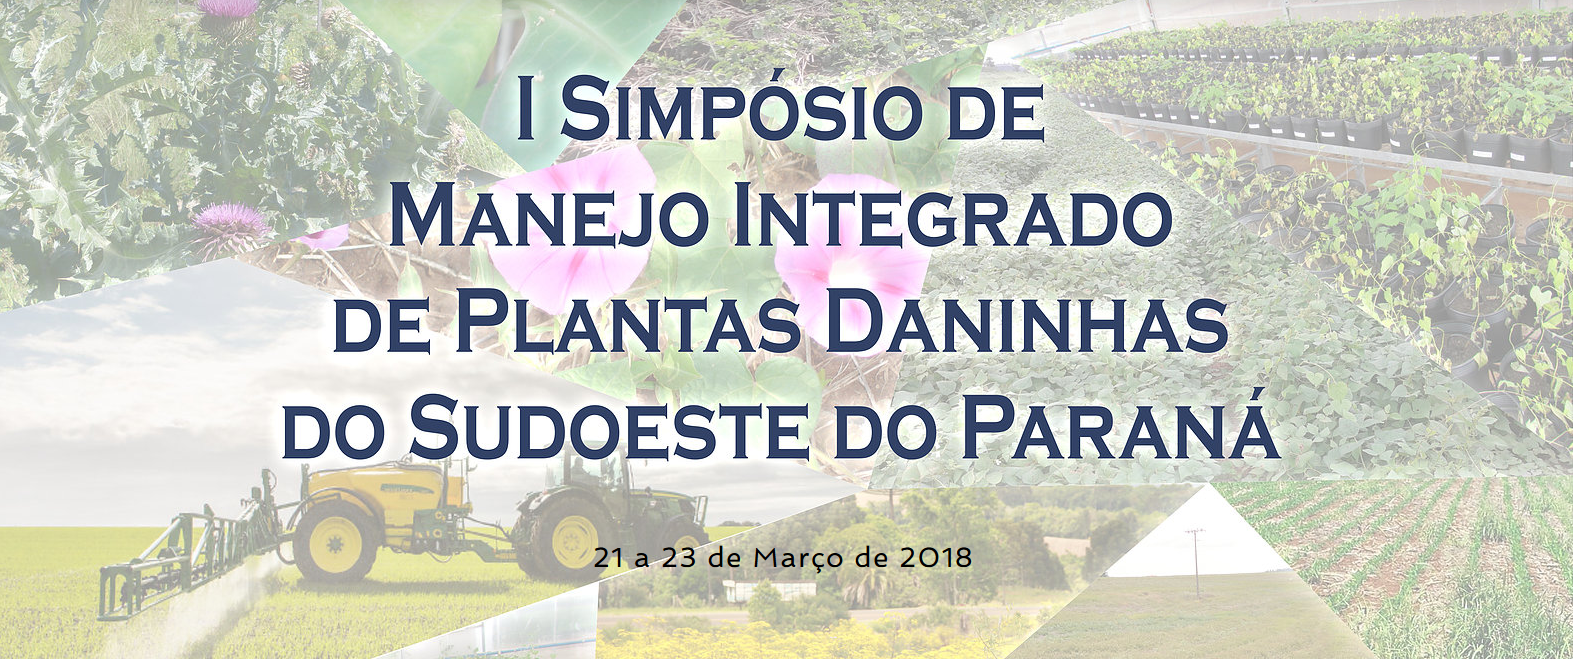 Cartaz contendo nome e data do evento "I Simpósio de manejo integrado de plantas daninhas do sudoeste do Paraná, de 21 e 23 de março de 2018"